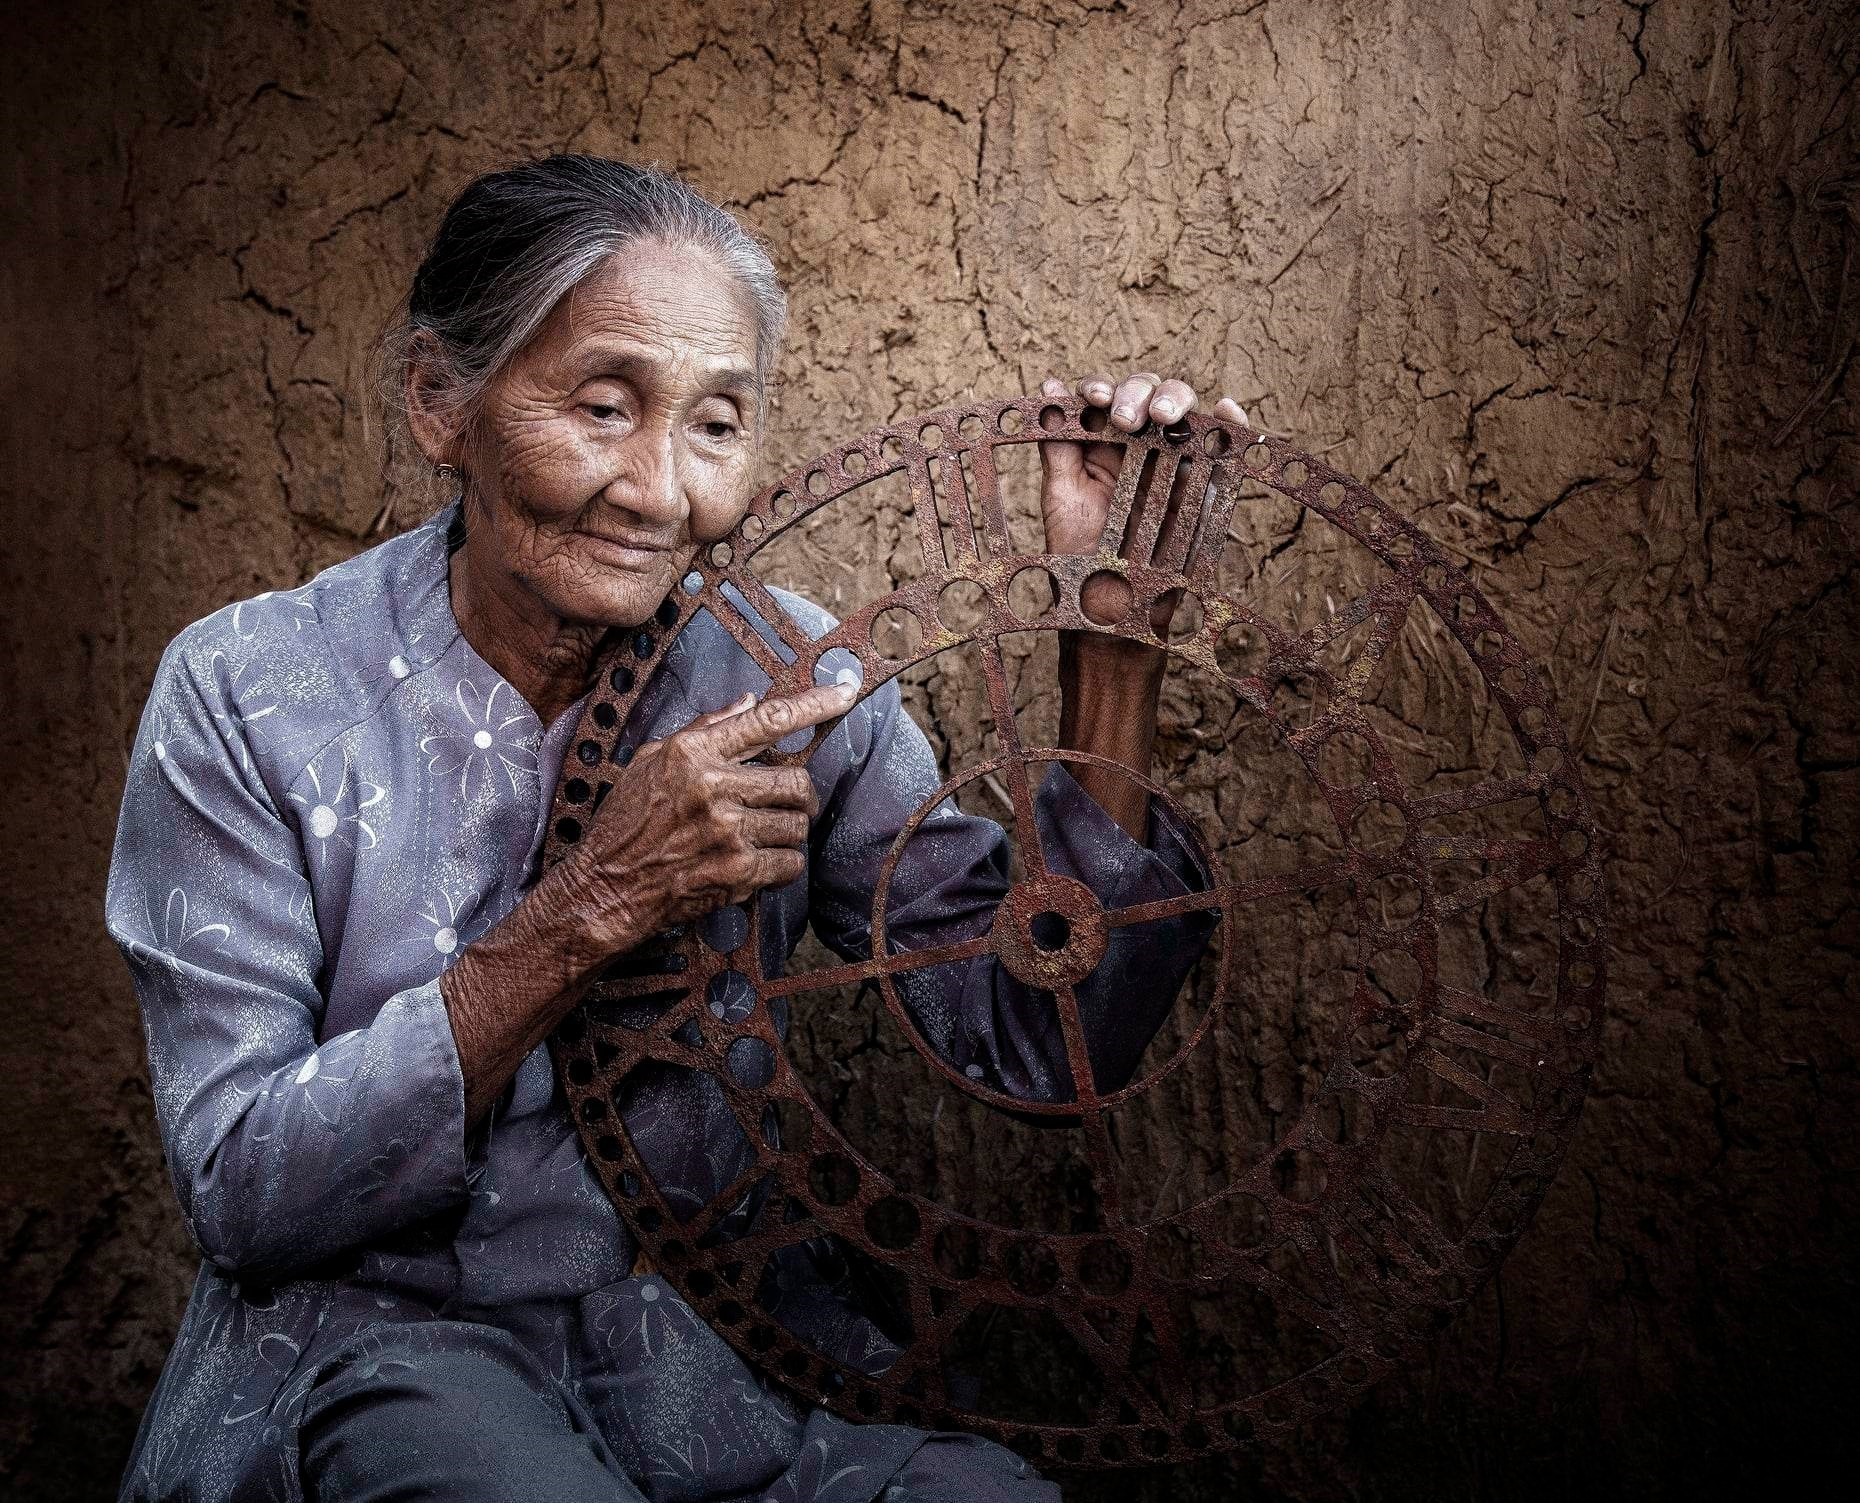 Bánh xe thời gian. Ảnh ý tưởng của Lê Trọng Khang, được chọn trưng bày ở hạng mục ảnh ý tưởng tại cuộc thi Ảnh nghệ thuật quốc tế lần thứ 12 - VN2023.